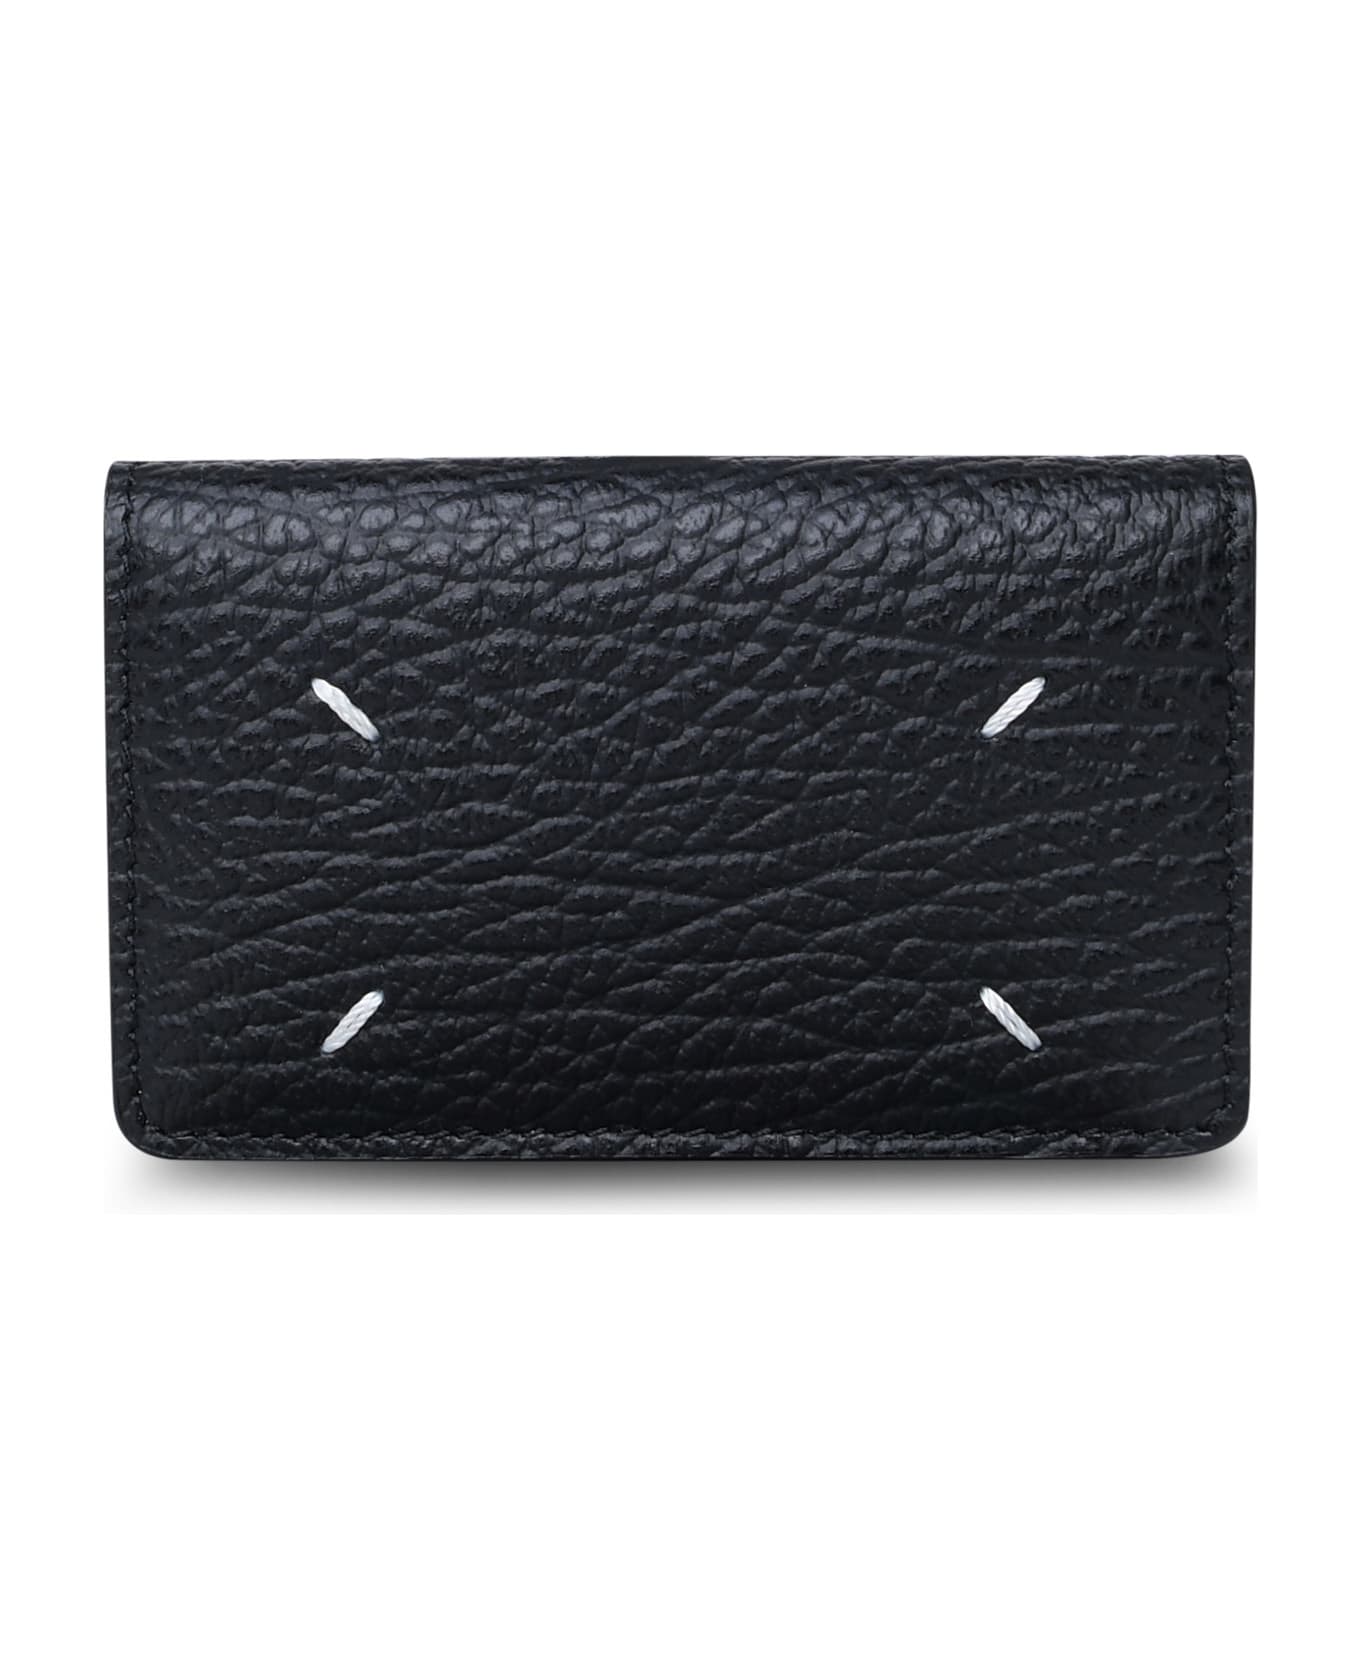 Maison Margiela Black Leather Cardholder - Black